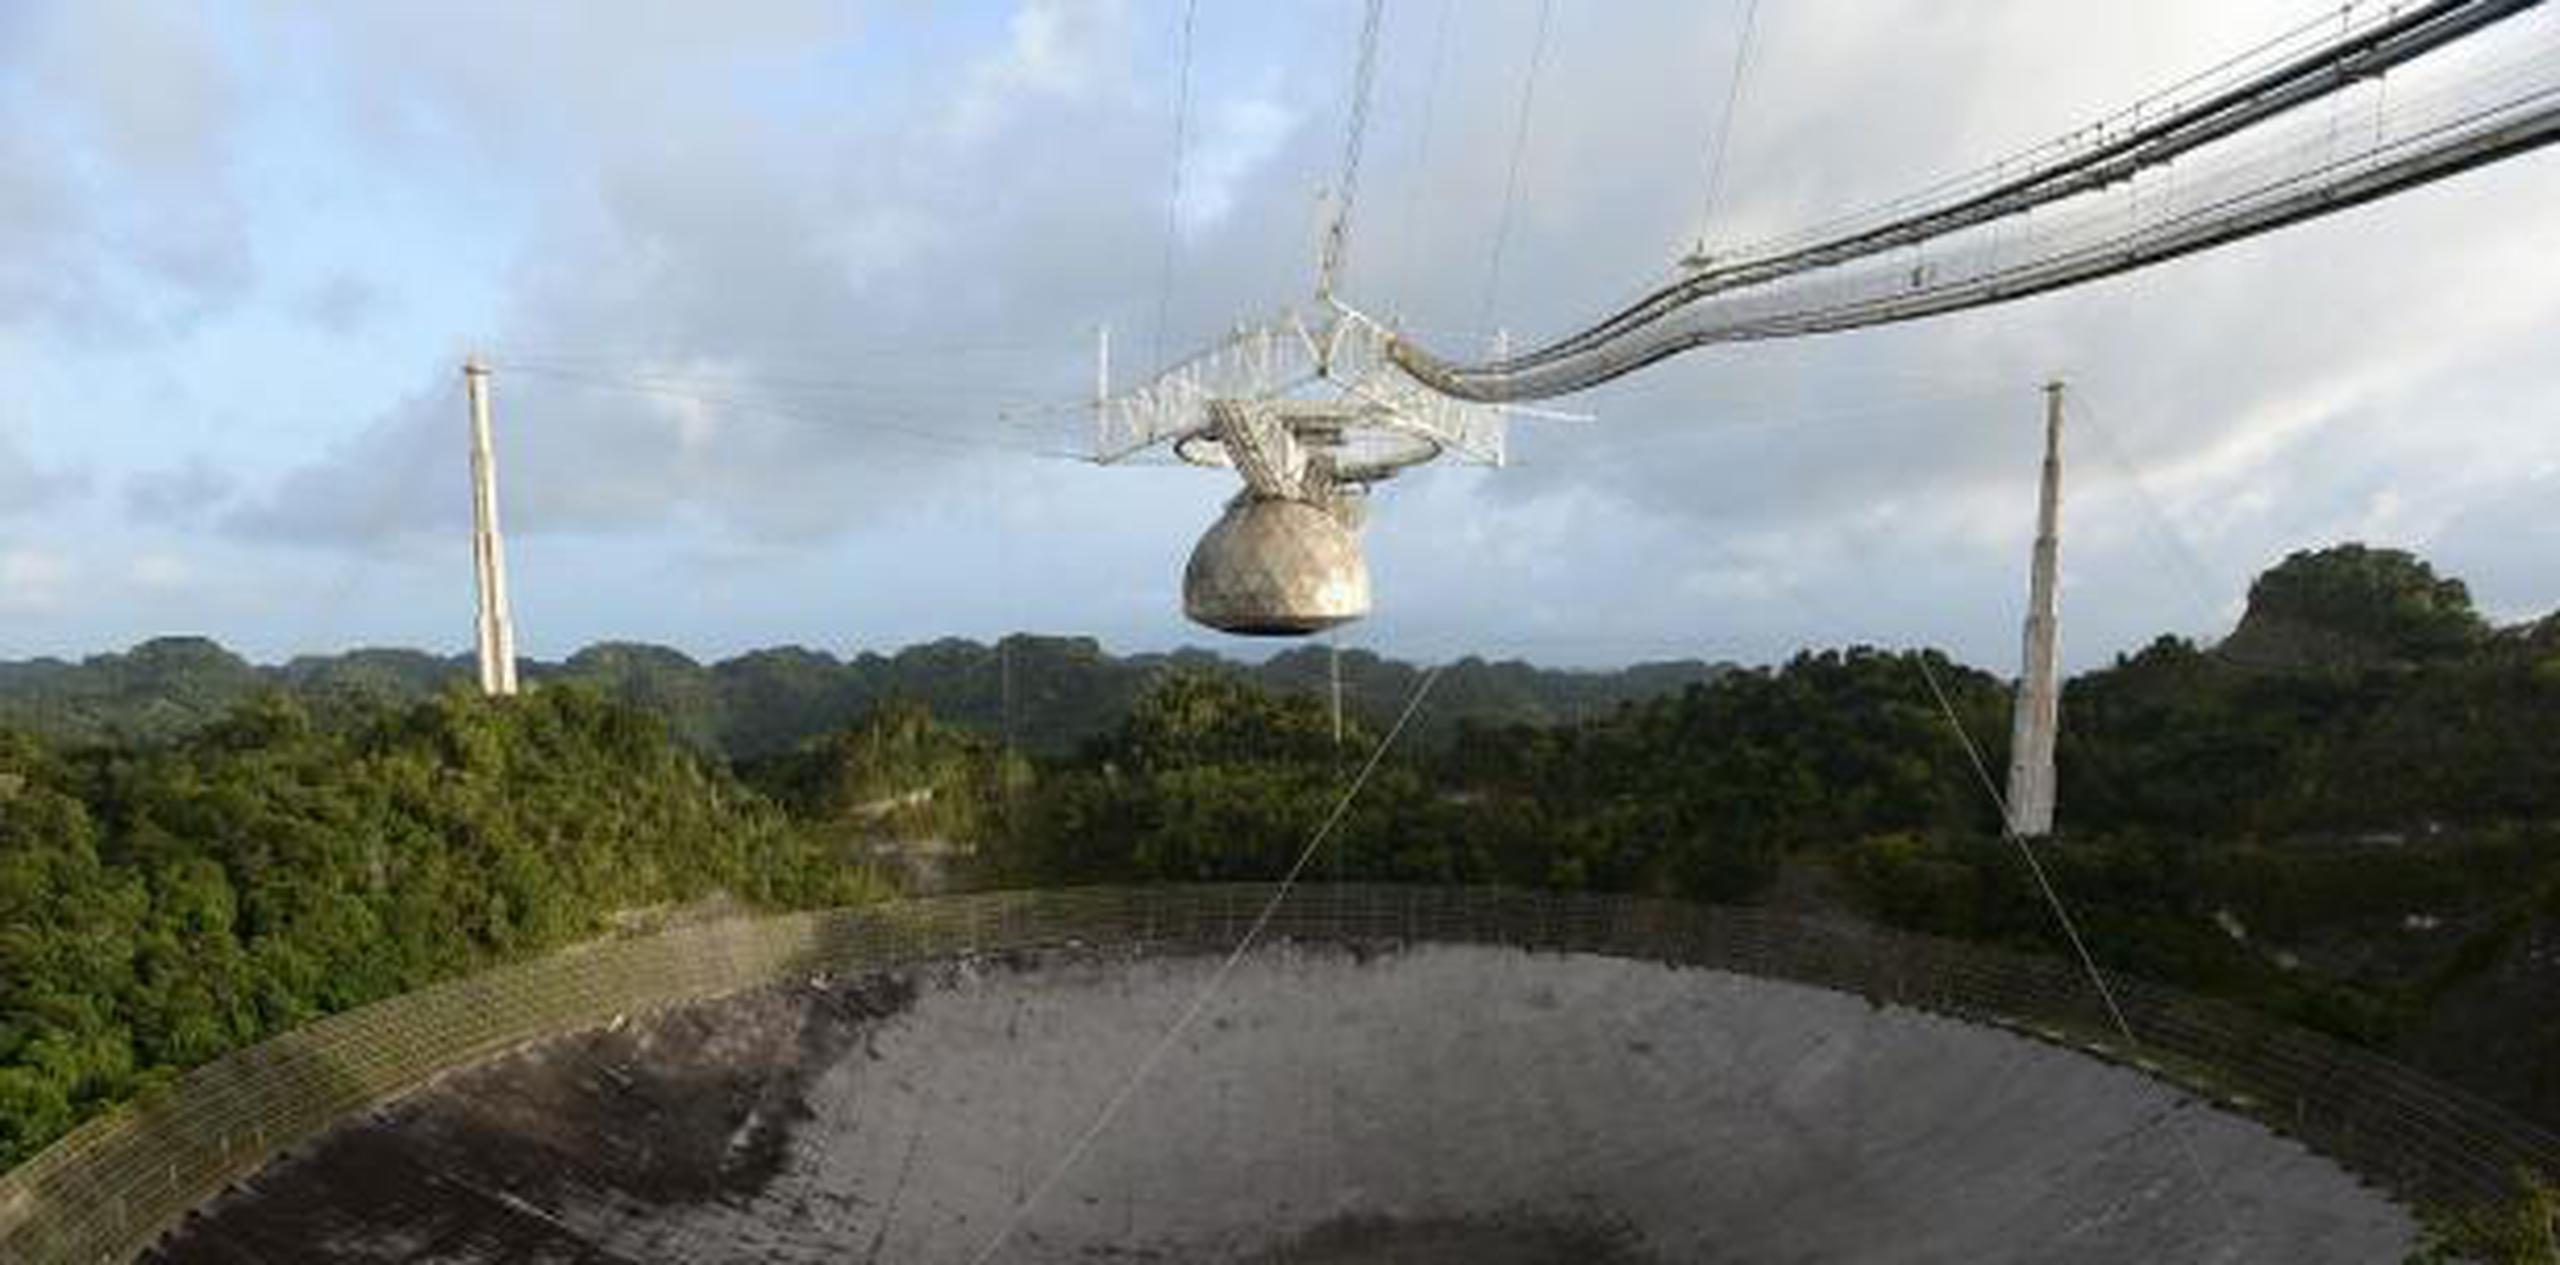 El radiotelescopio de Arecibo genera cerca de 10 millones de dólares anualmente a la industria del turismo de la isla. (Archivo)